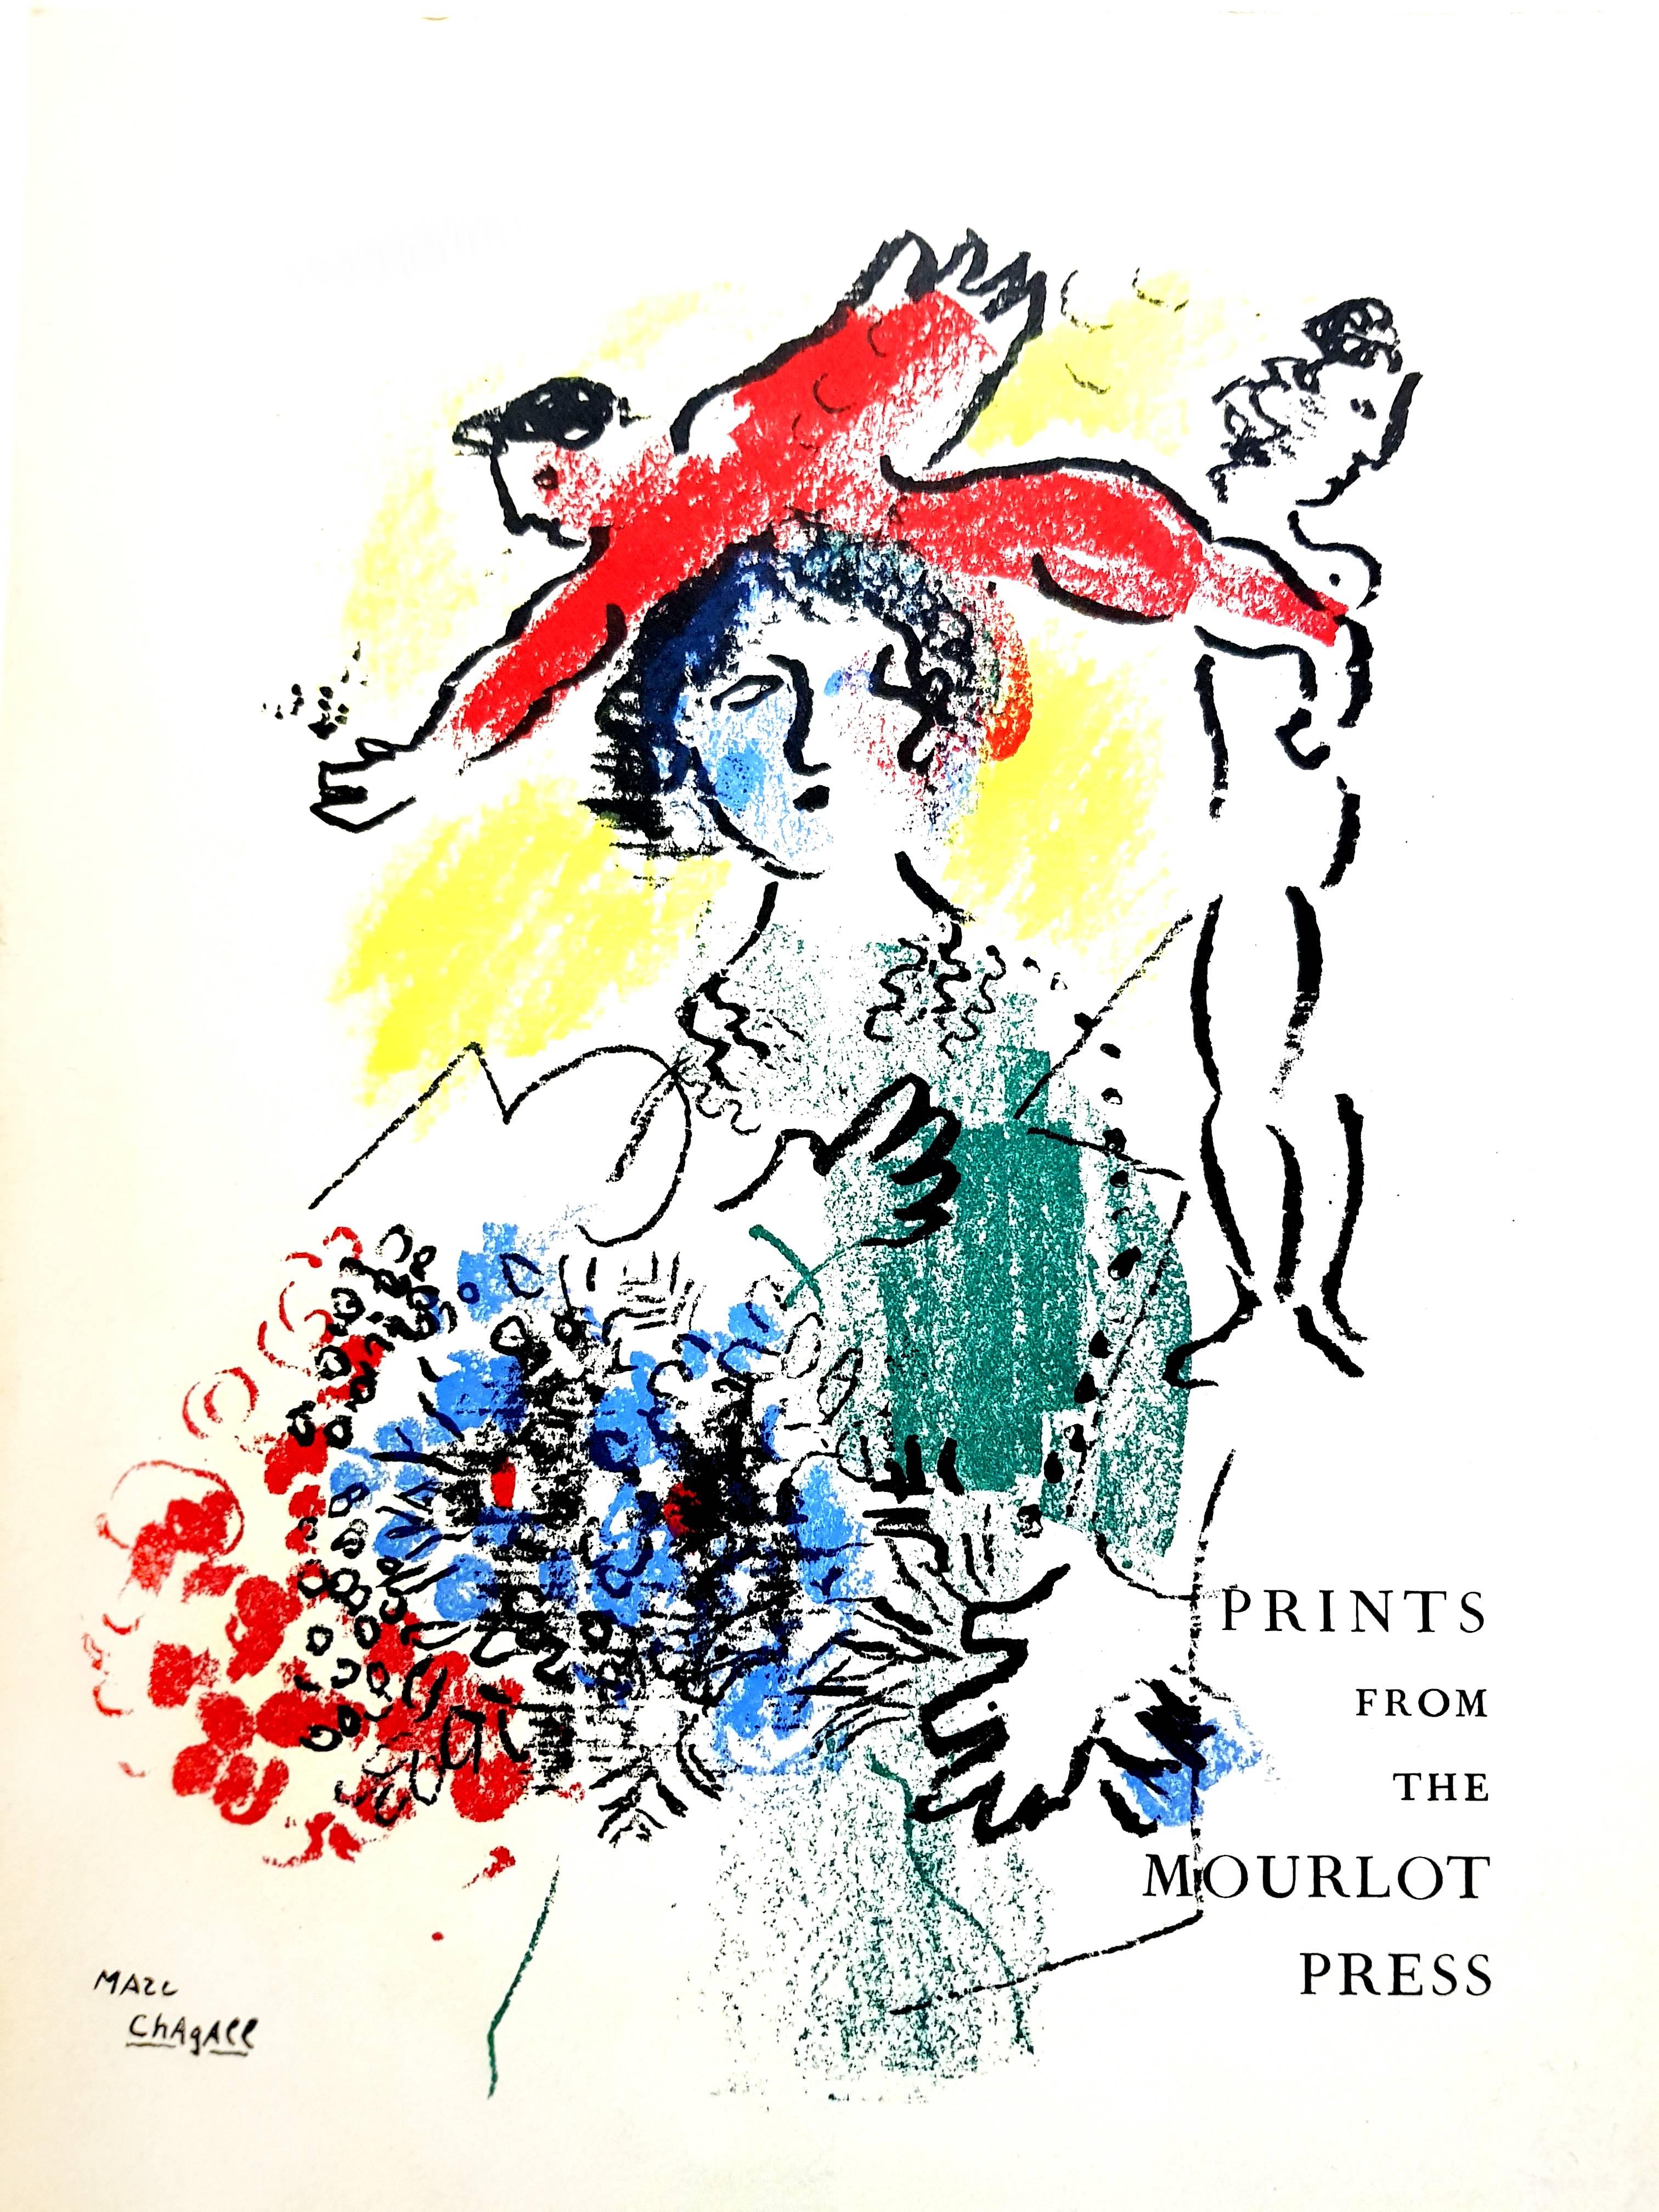 Marc Chagall - Couverture - Lithographie originale 
1964
Dimensions : 30 x 20 cm
Edition de 200 (un des 200 sur Vélin de Rives)
Mourlot Press, 1964

Marc Chagall (né en 1887)

Marc Chagall est né en Biélorussie en 1887 et s'est intéressé très tôt à